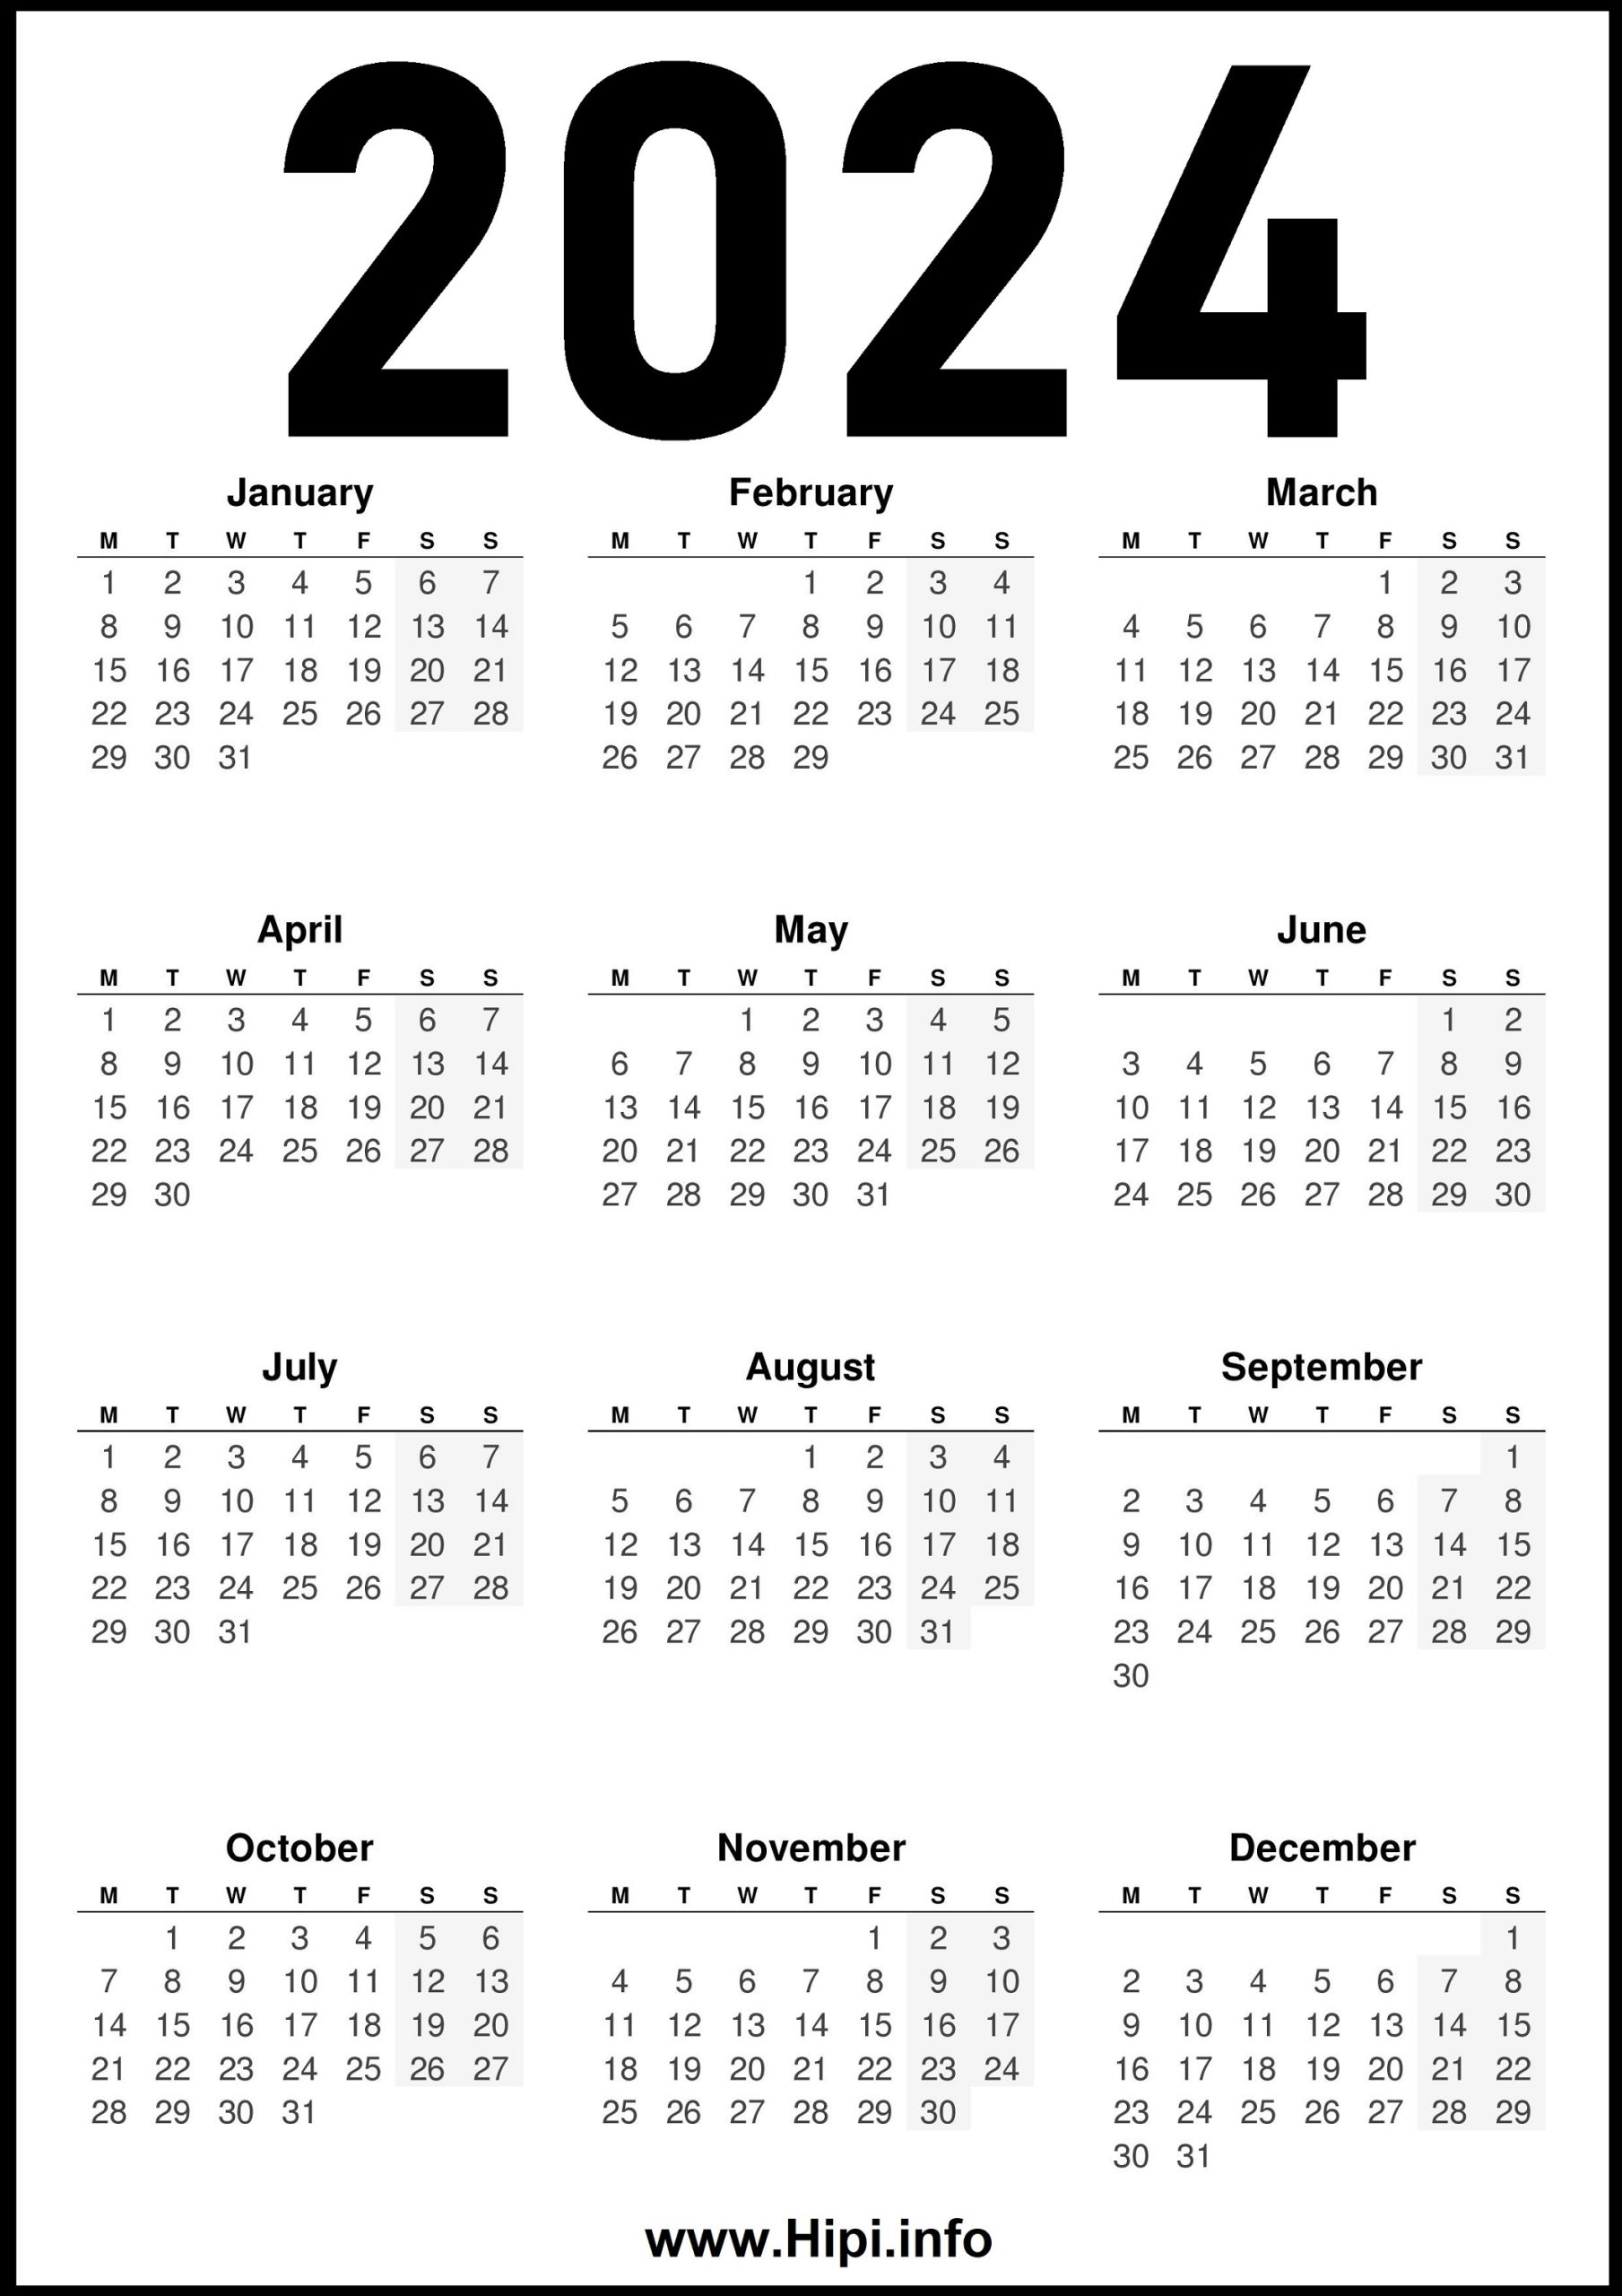 2024 United Kingdom UK Calendar Hipi.info